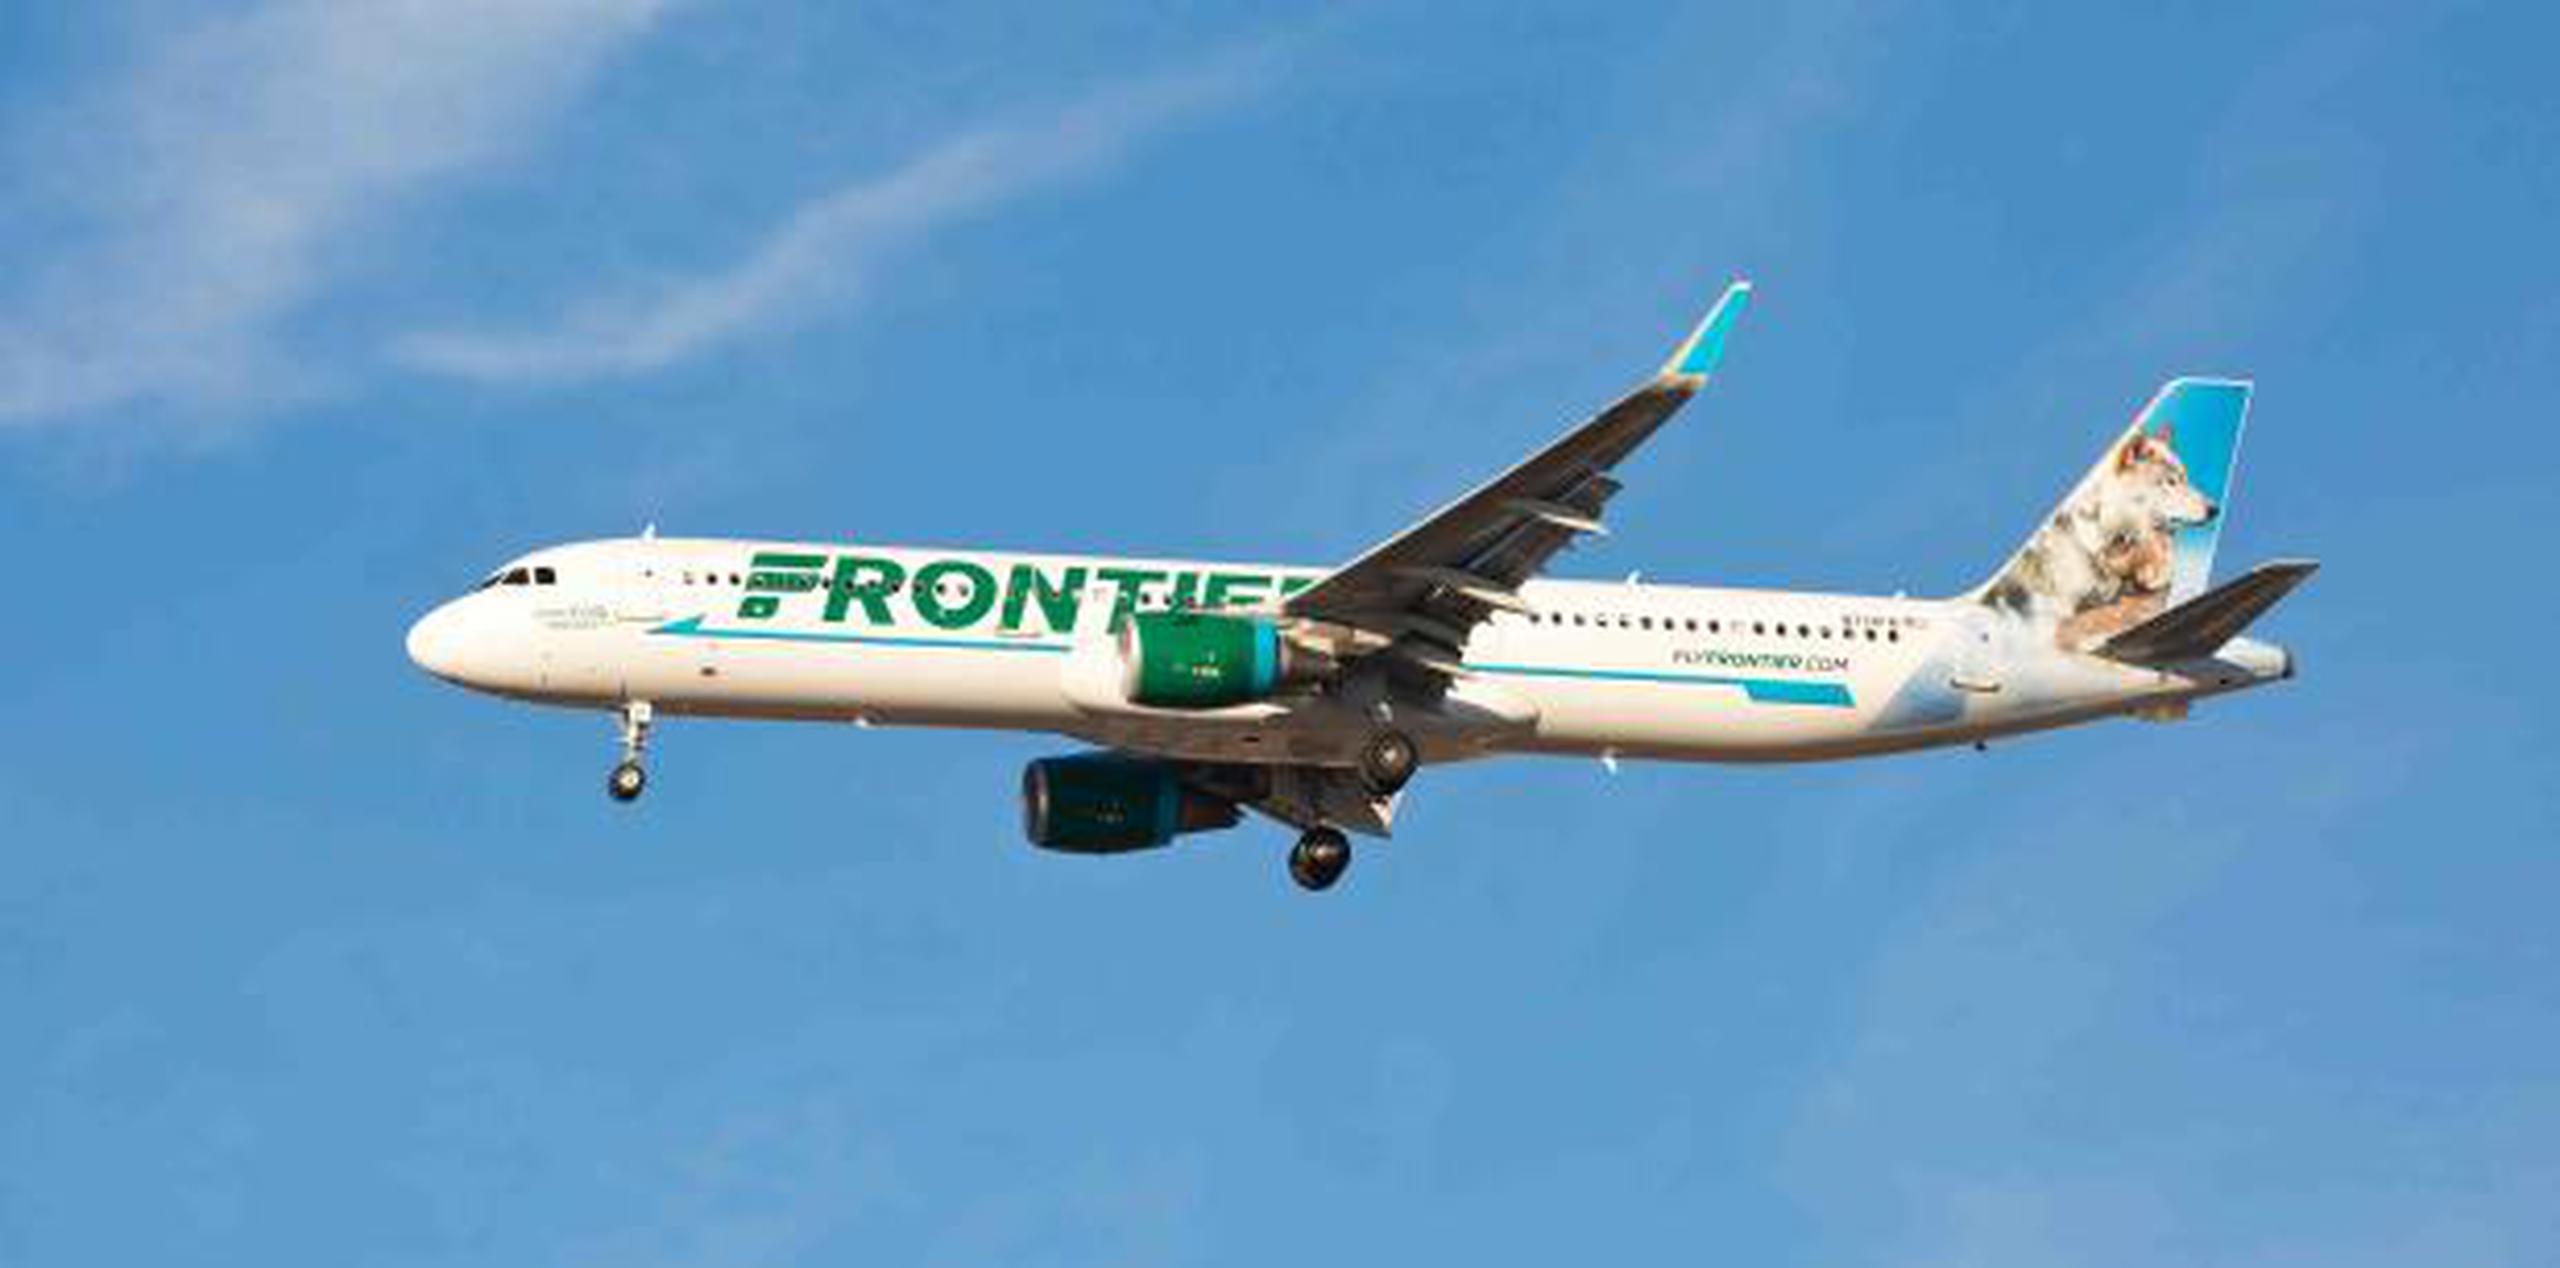 Frontier usará un avión Airbus A321 para la nueva ruta. (Shutterstock)